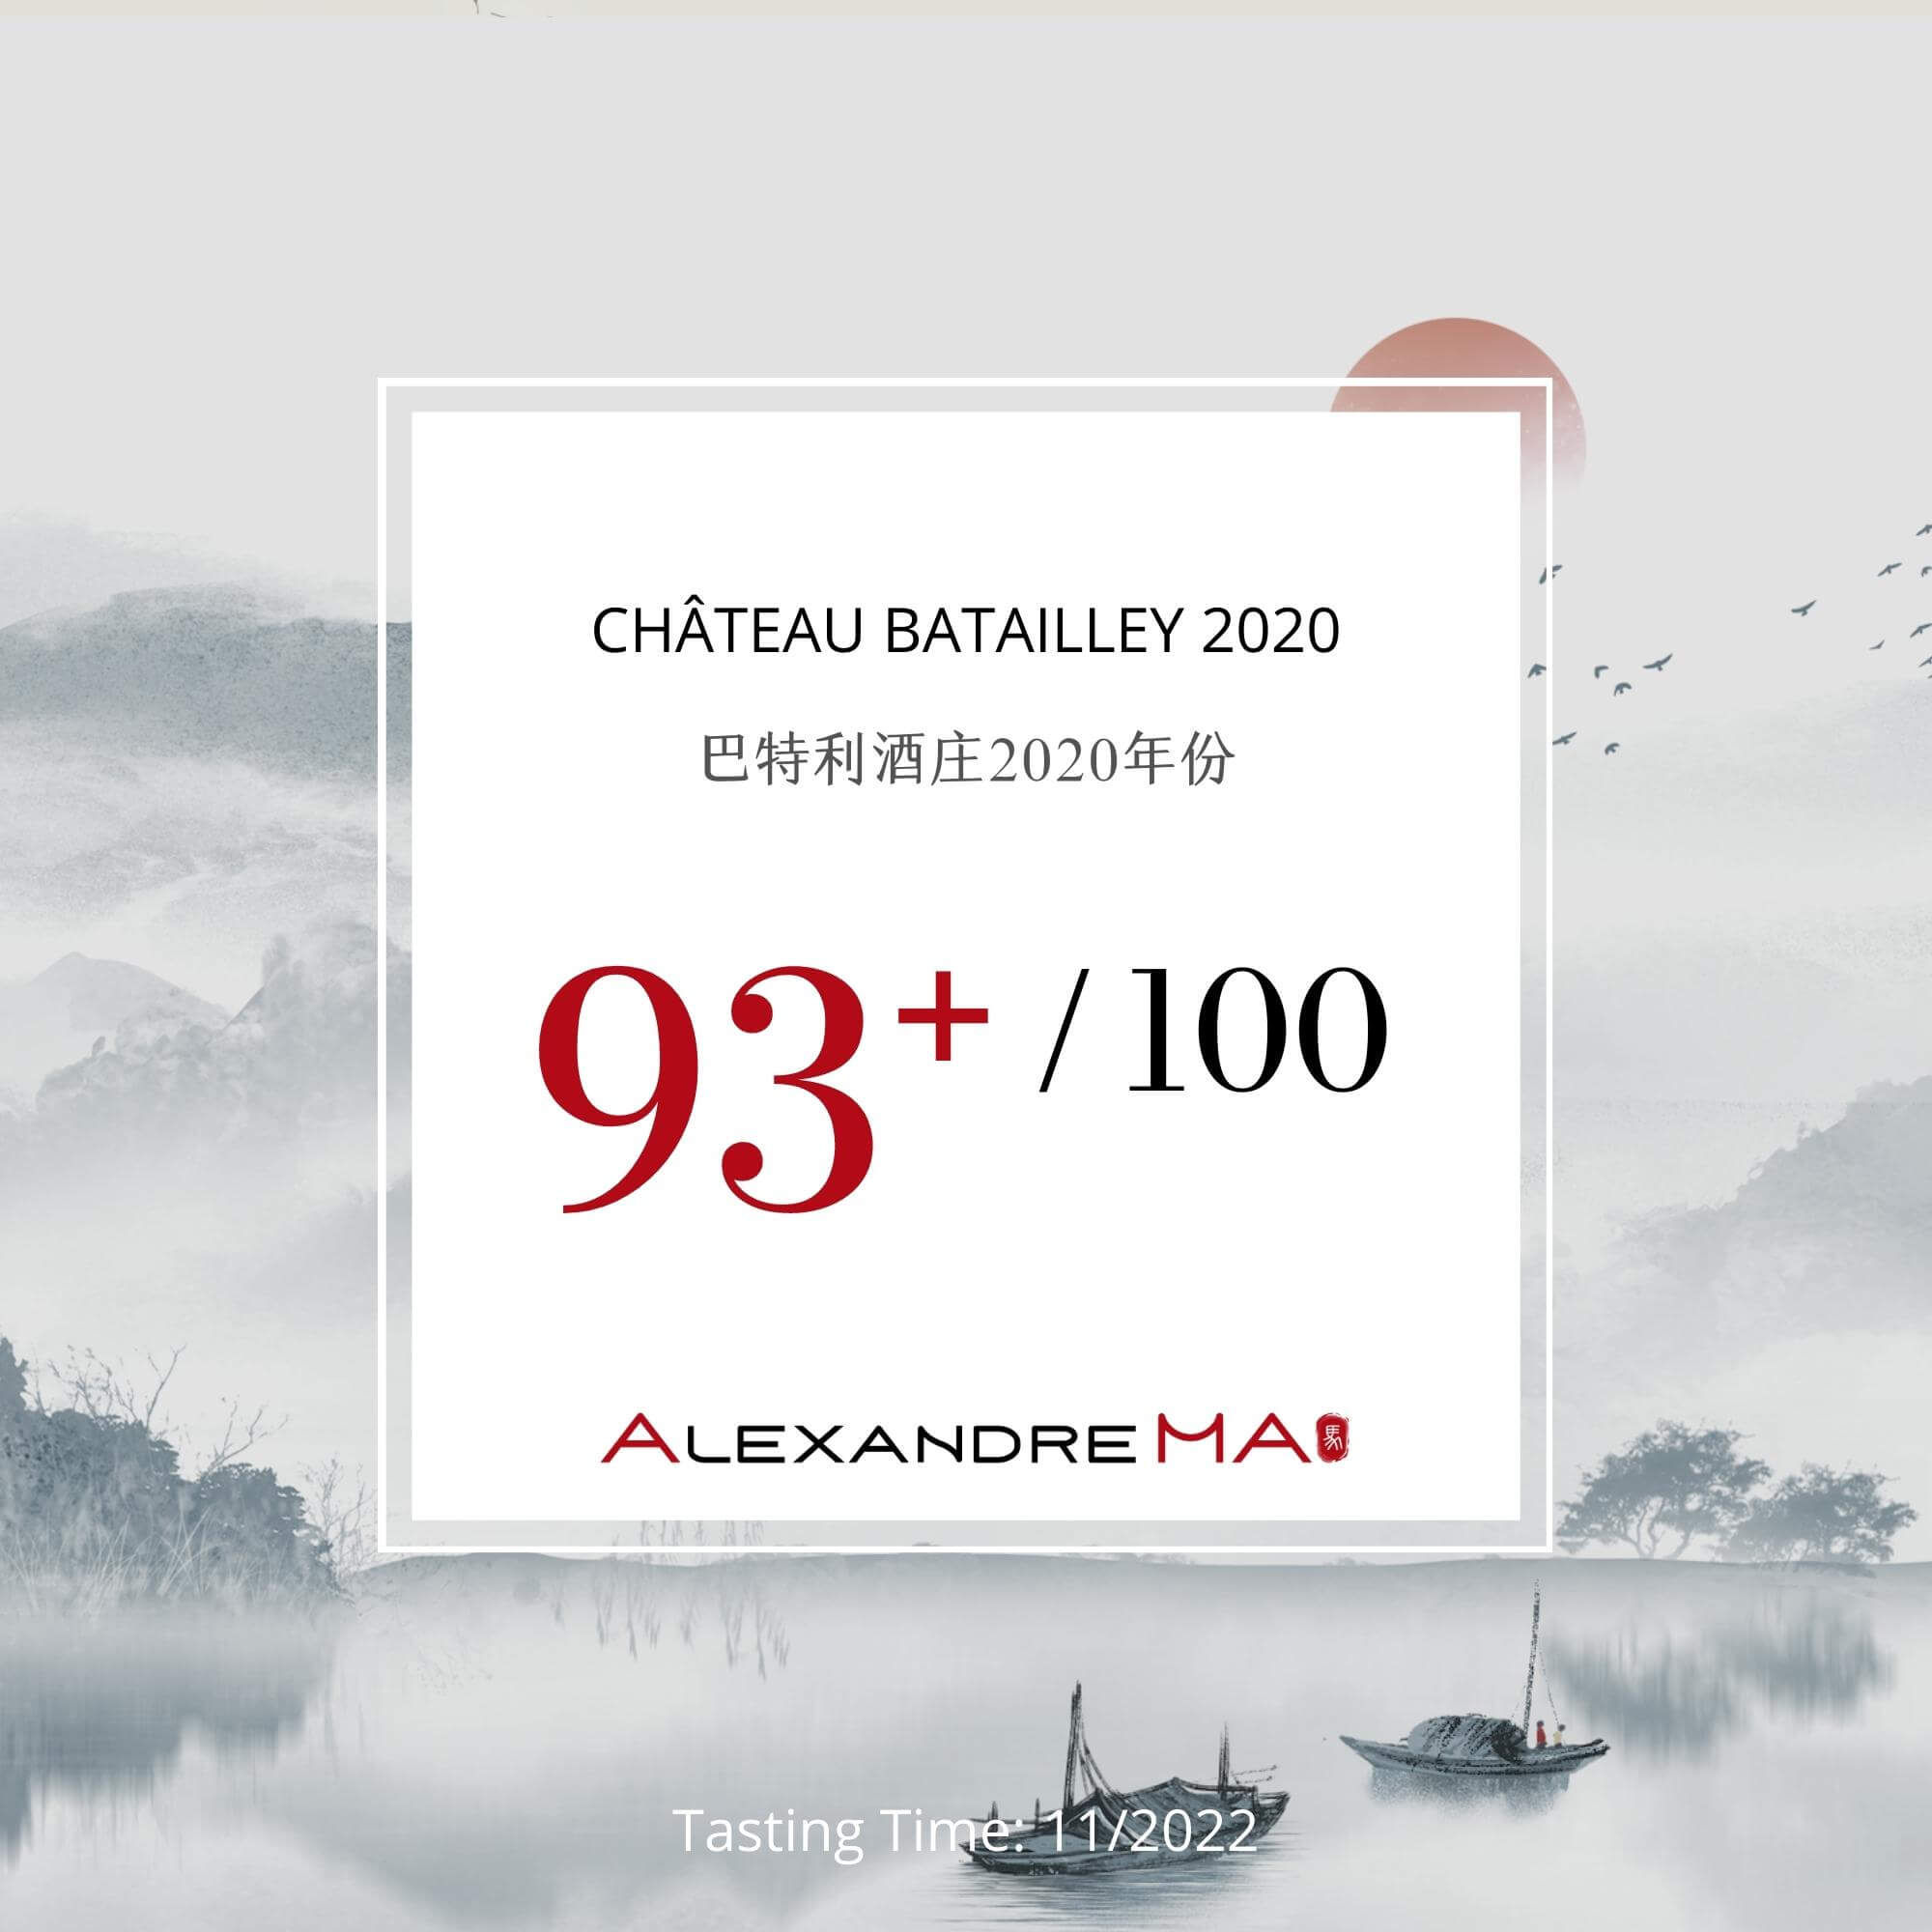 Château Batailley 2020 - Alexandre MA